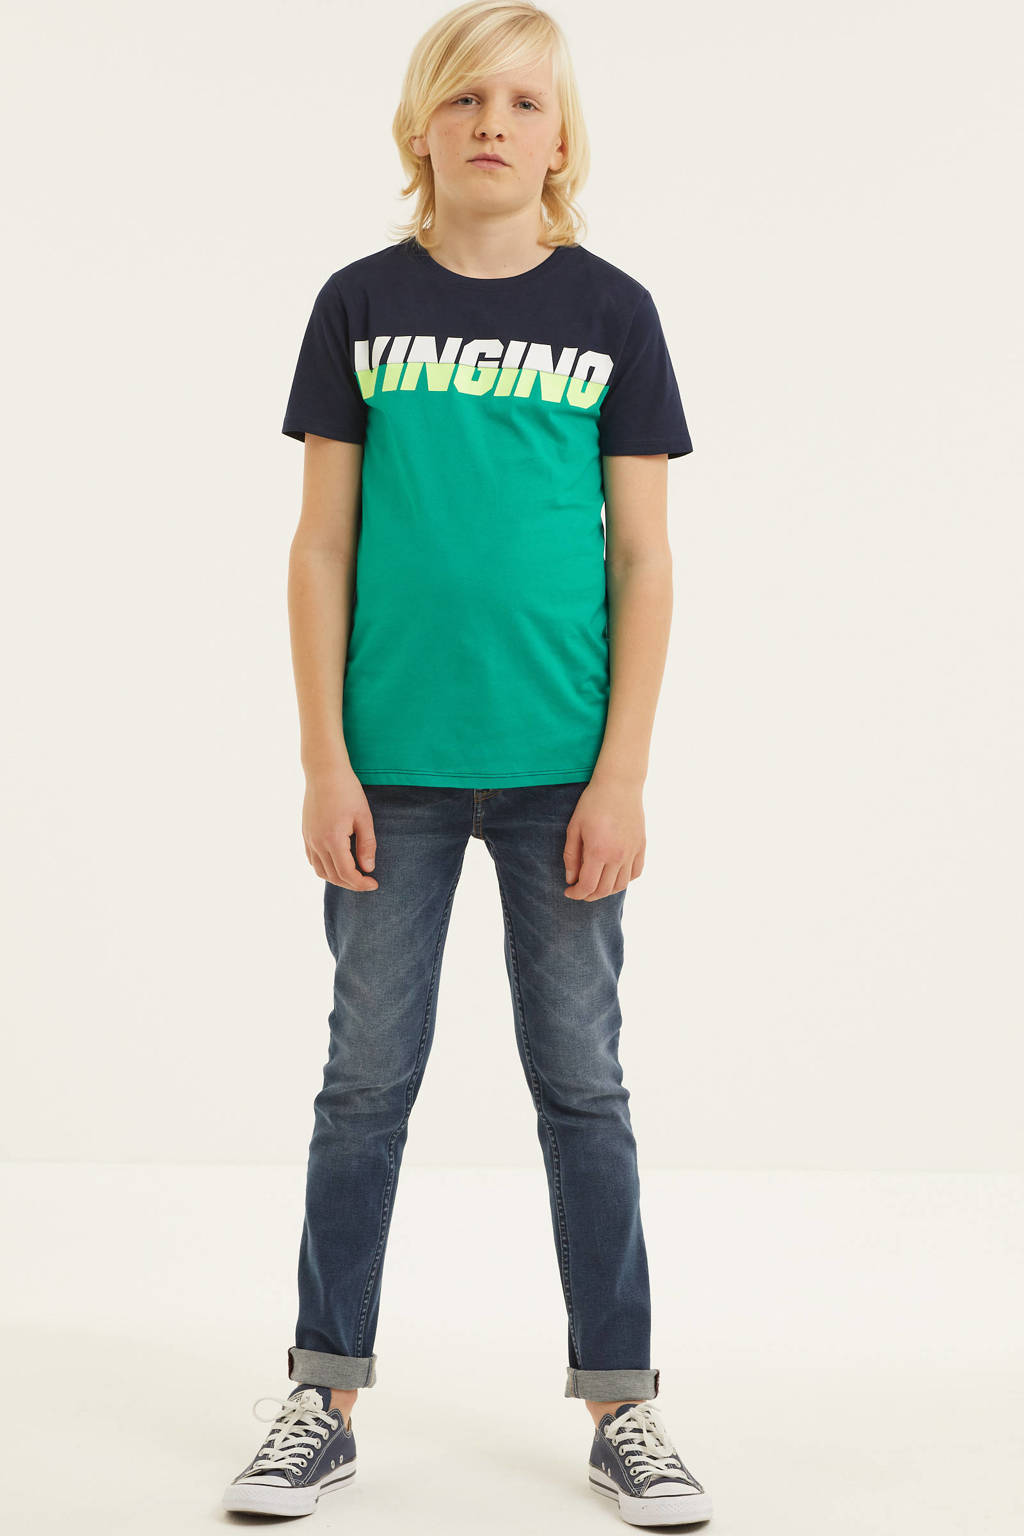 Donkerblauw en mintgroene jongens Vingino T-shirt Hewy van katoen met logo dessin, korte mouwen en ronde hals